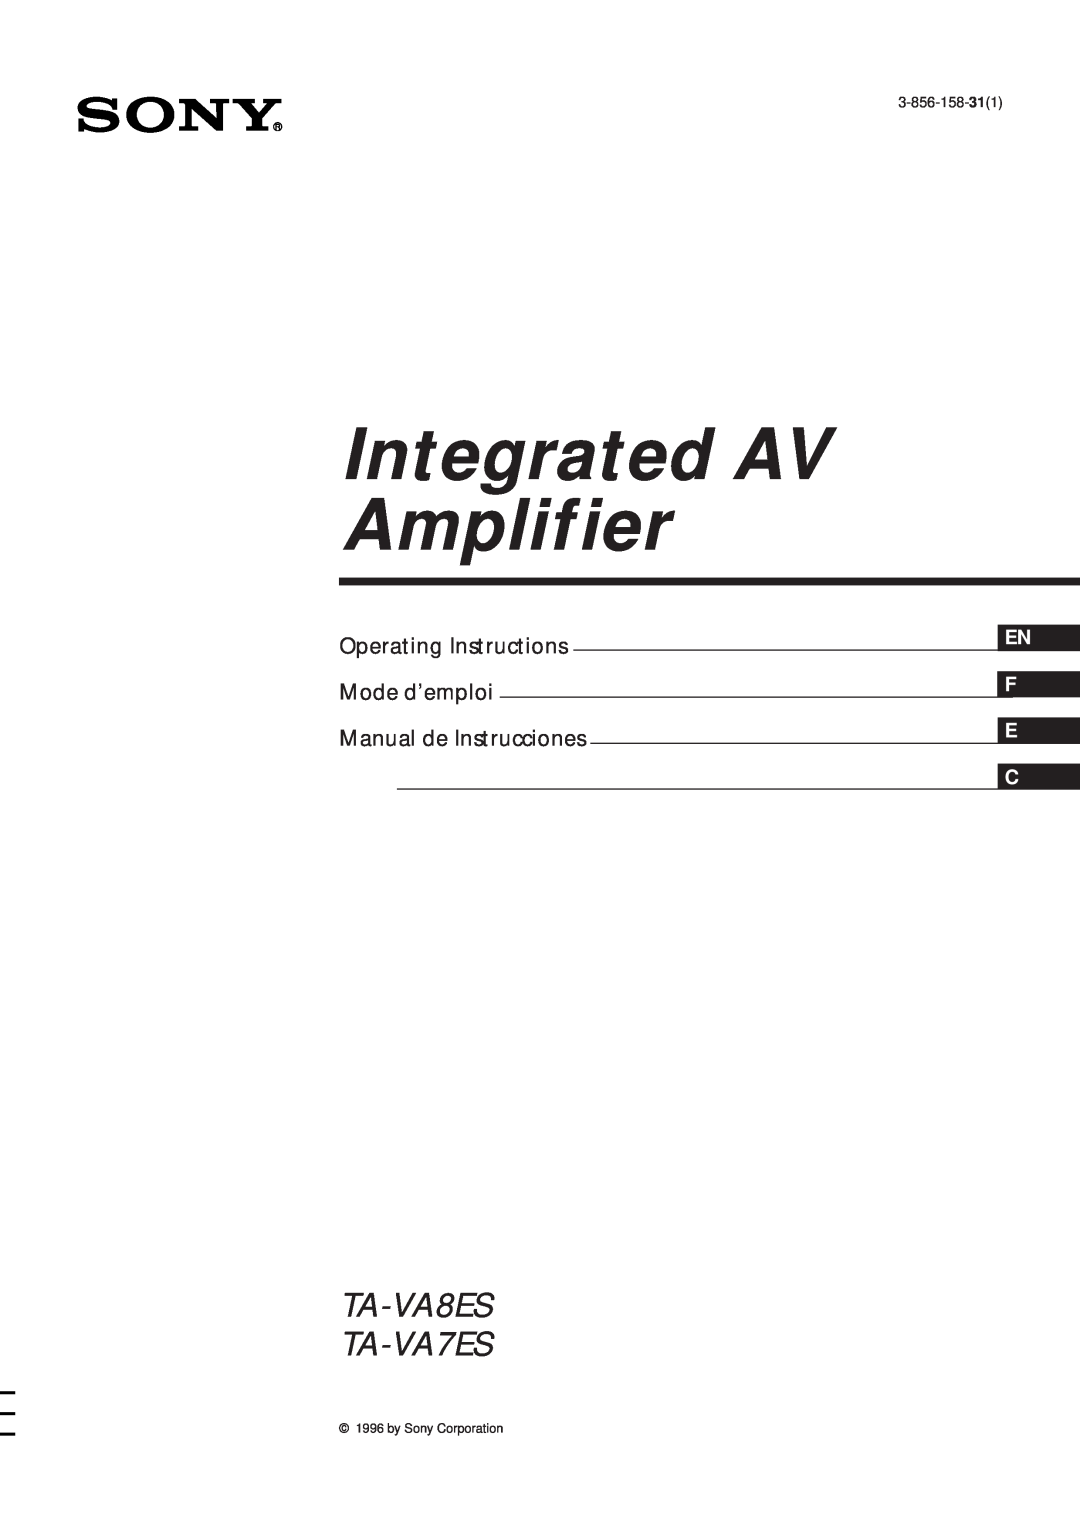 Sony manual Integrated AV Amplifier, TA-VA8ES TA-VA7ES, Operating Instructions, Mode d’emploi, Manual de Instrucciones 